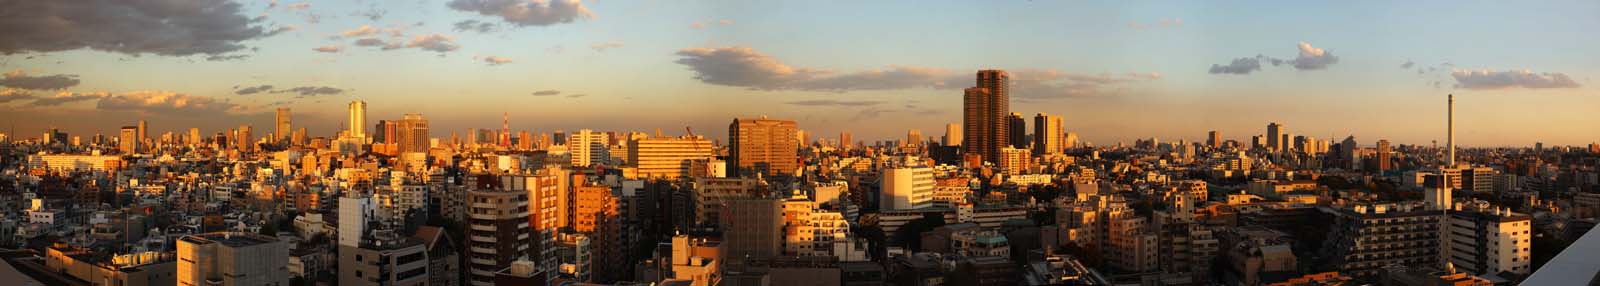 fotografia, material, livra, ajardine, imagine, proveja fotografia,Tquio do crepsculo, Colinas de Roppongi, construindo, Torre de Tquio, 